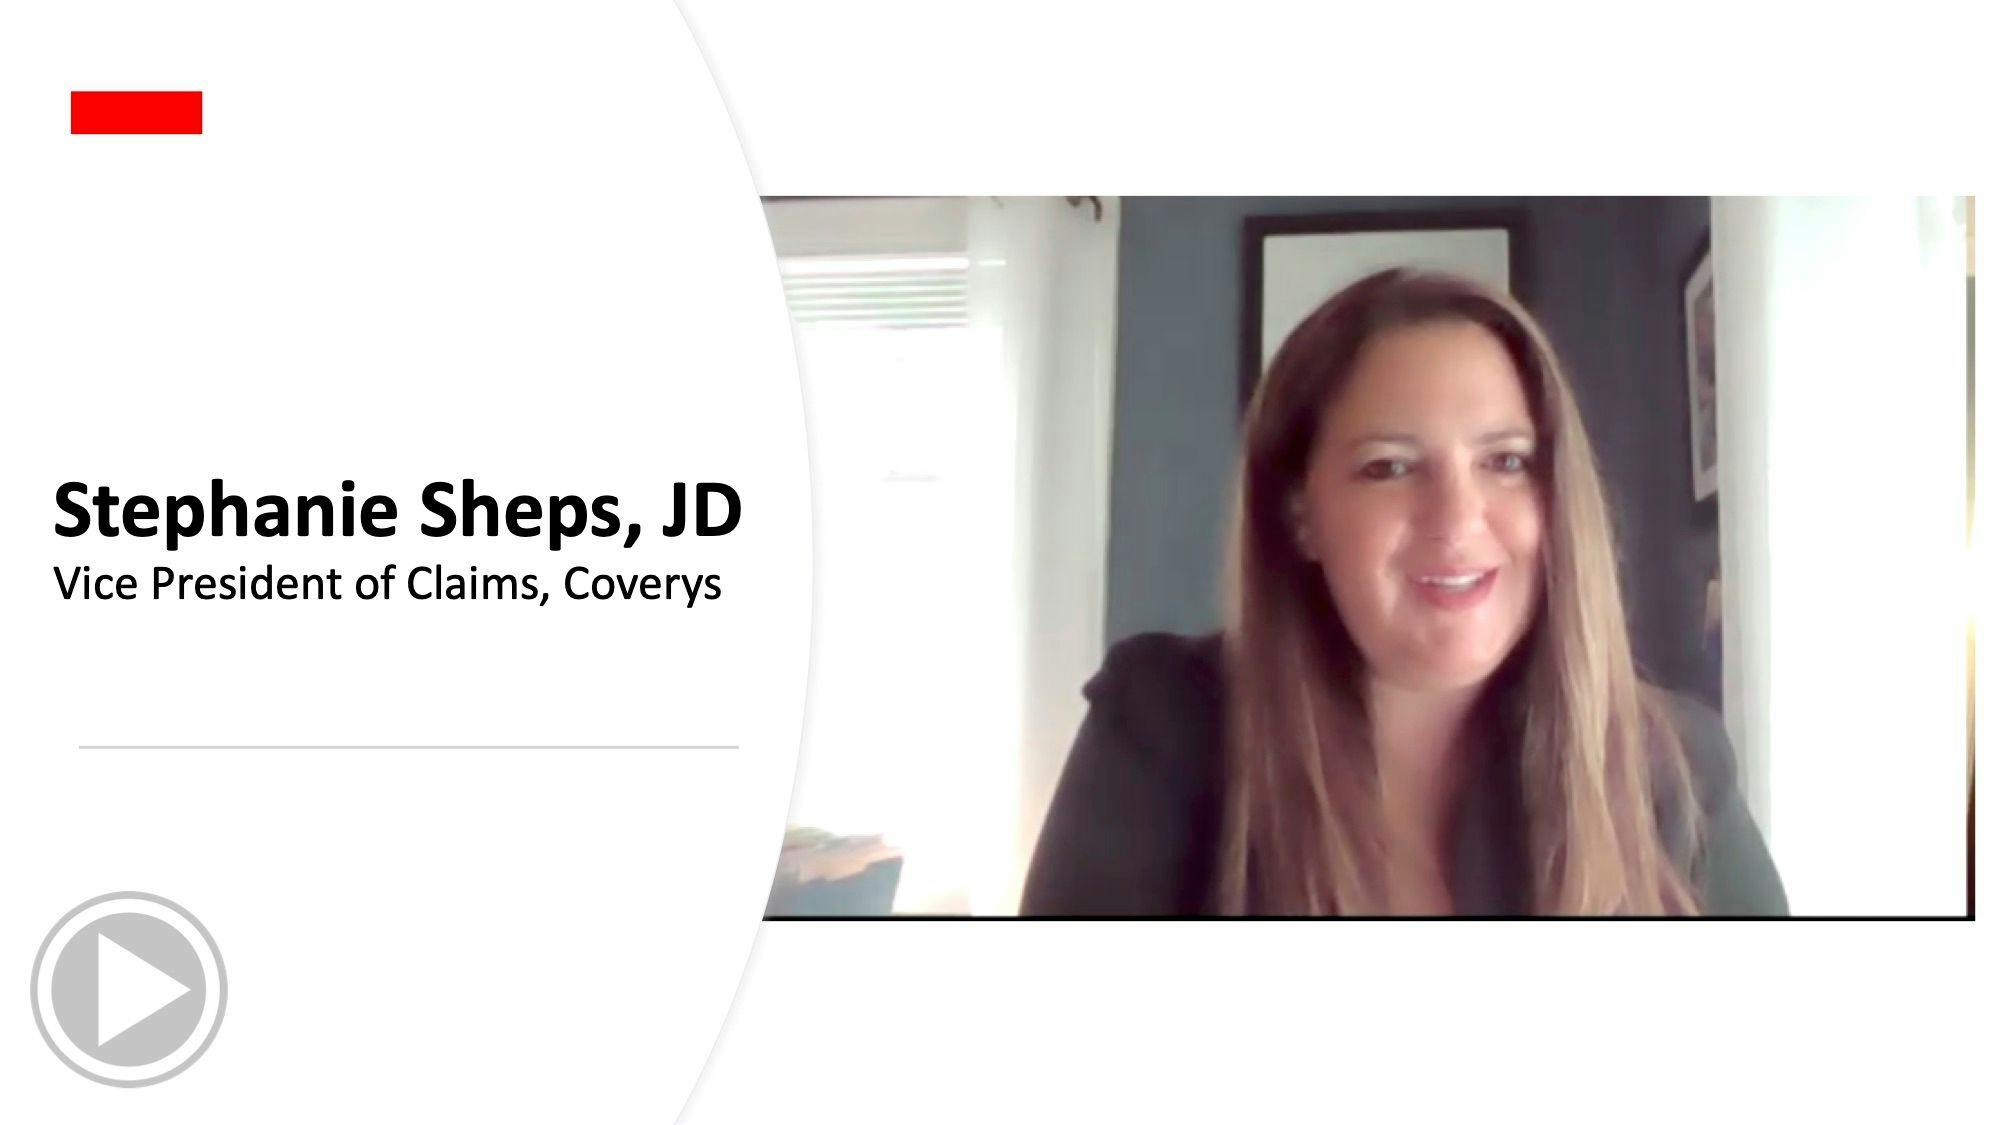 Stephanie Sheps, JD, gives expert advice